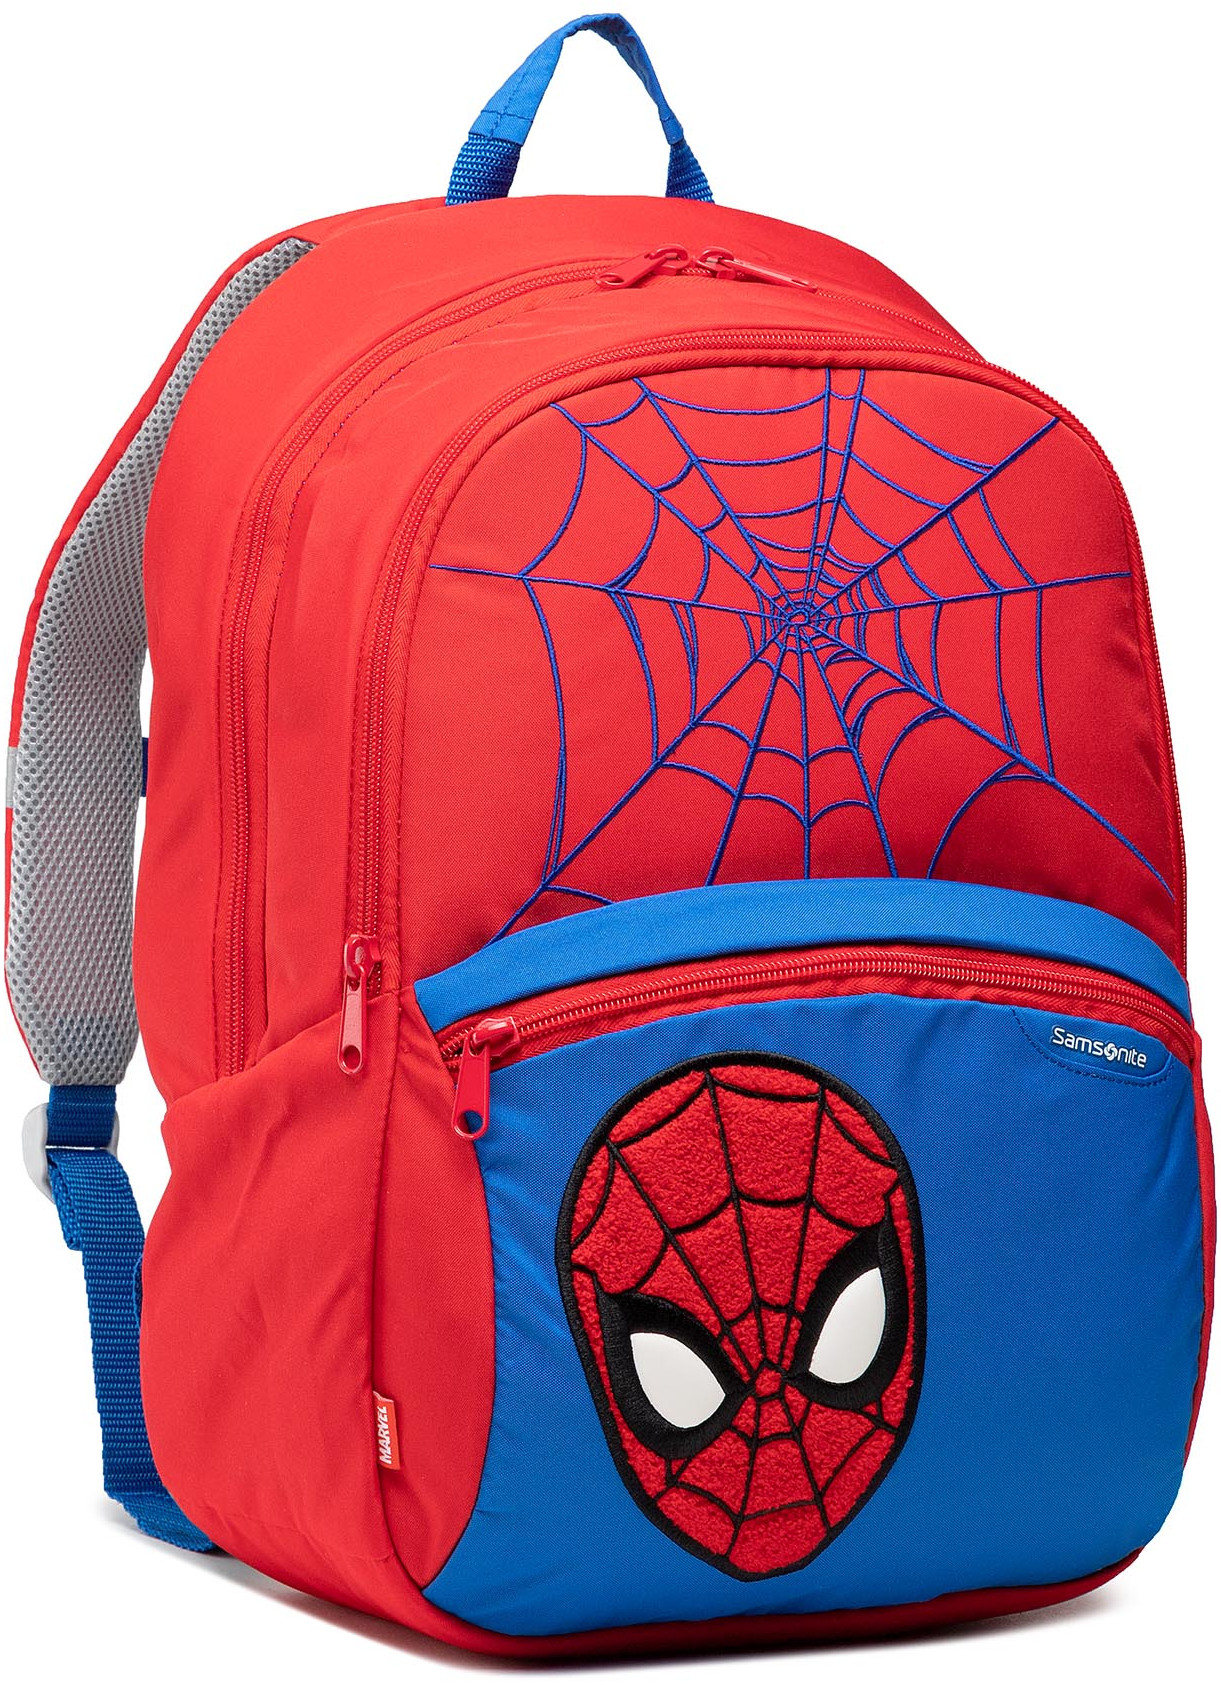 Samsonite Plecak Disney Ultimate 2.0 131855-5059-1CNU Spider-Man